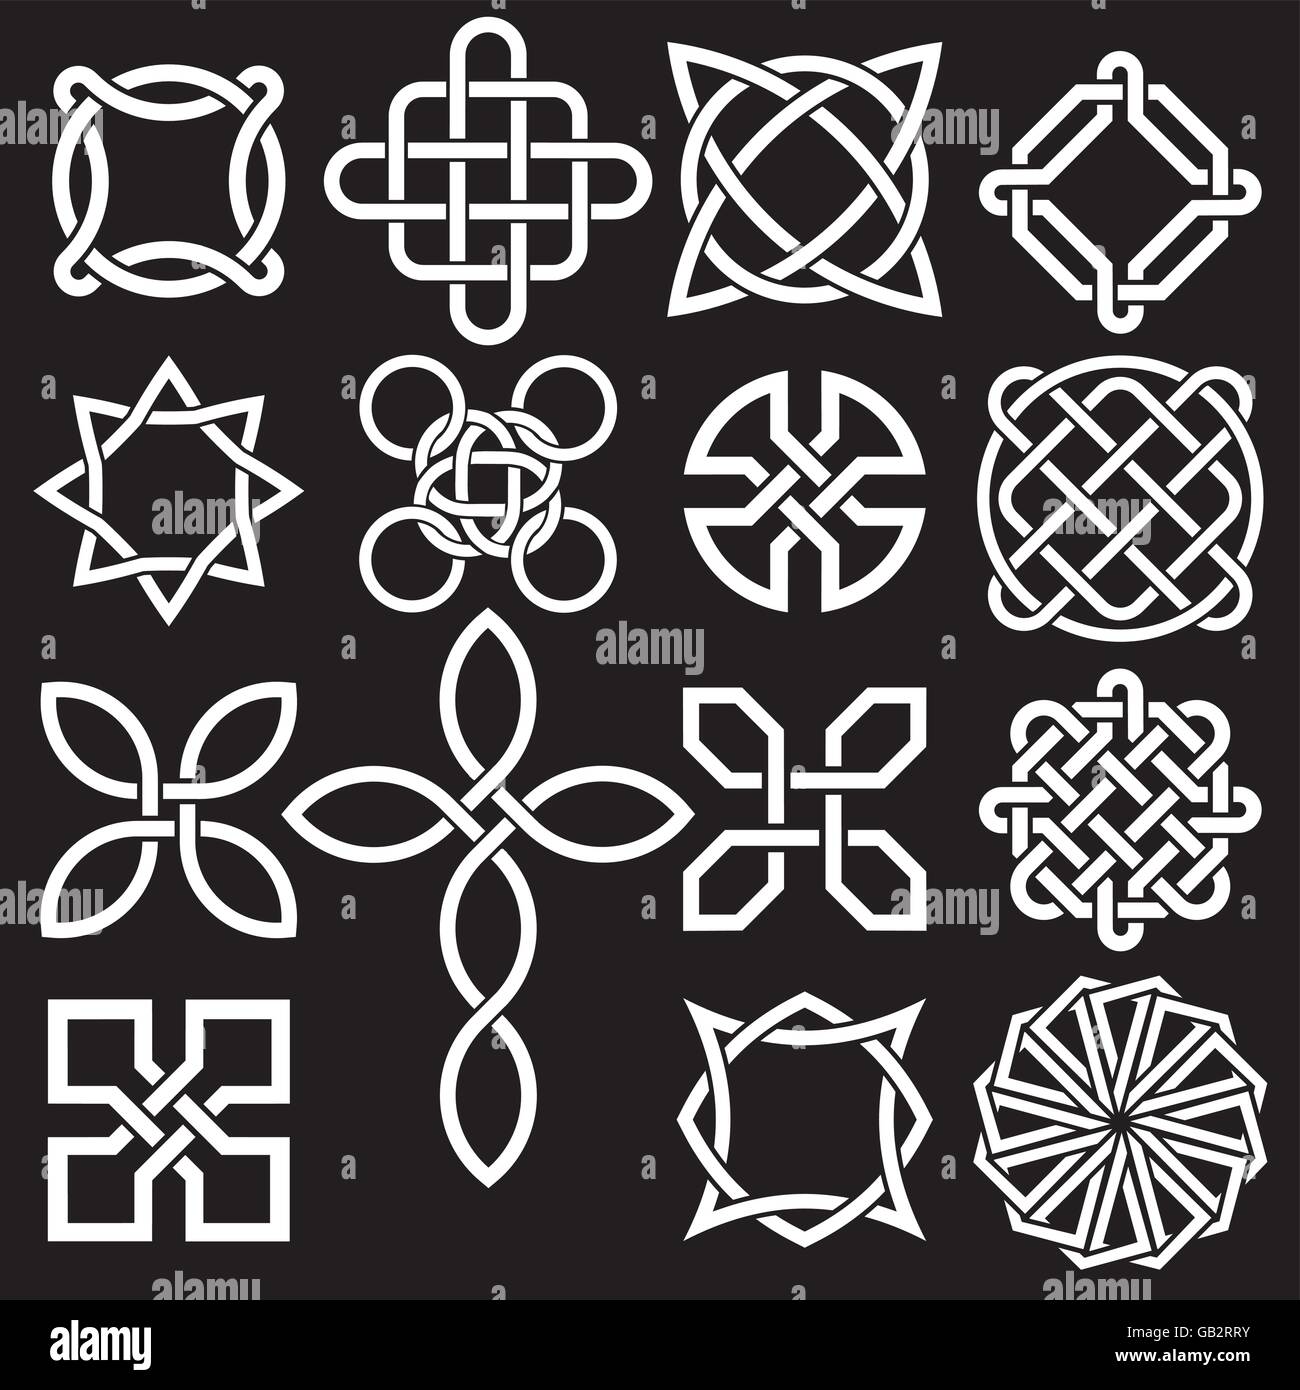 Collezione Di Disegni Celtici Knot In Formato Vettoriale Illustrazione Vettoriale